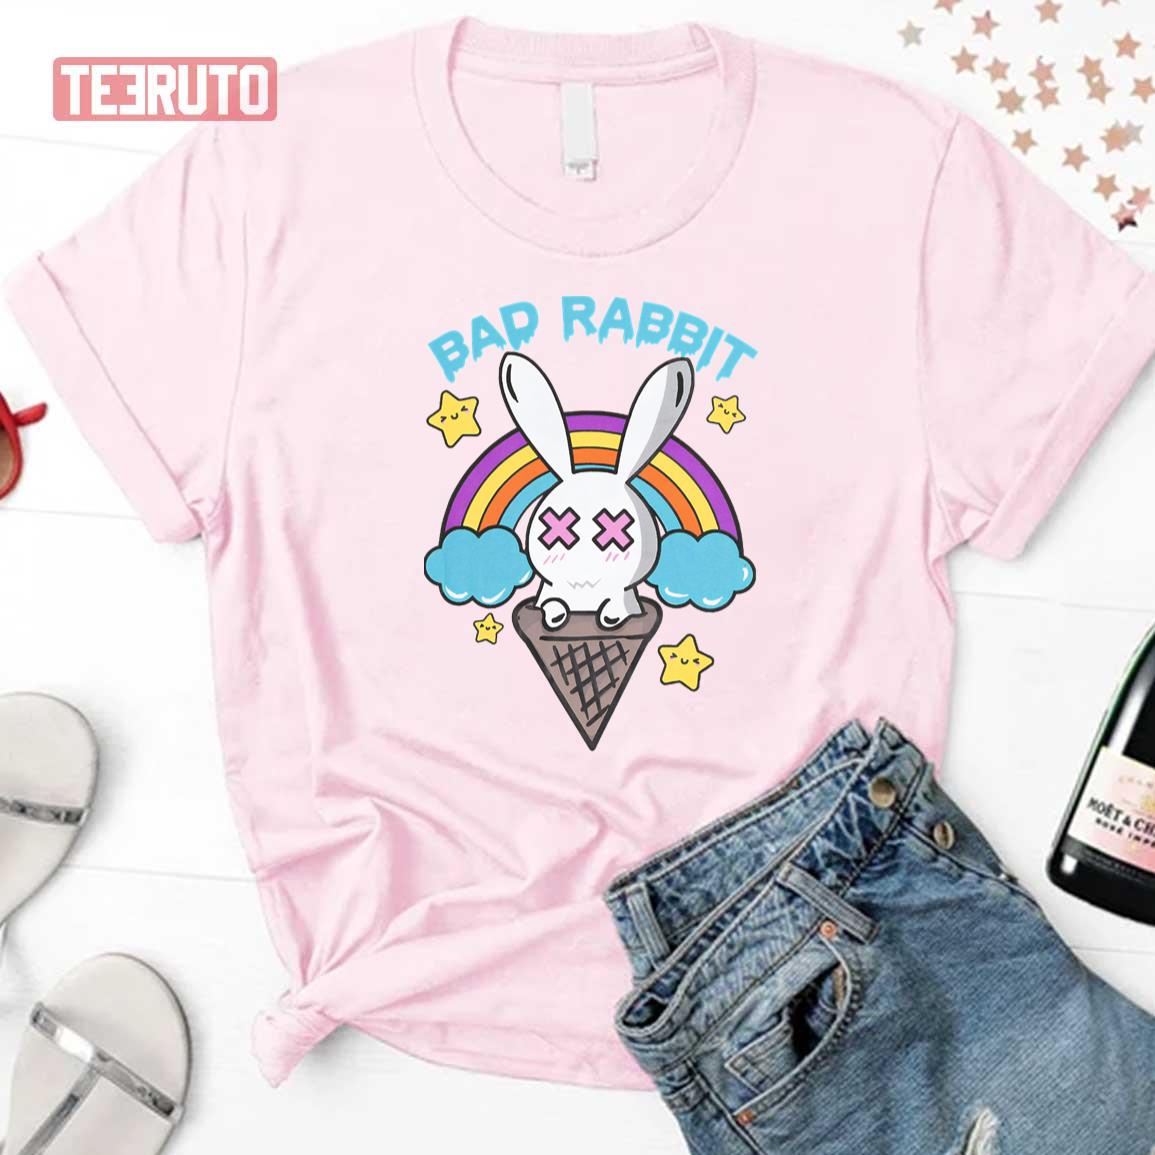 Bad Rabbit Candy Land Unisex T-Shirt